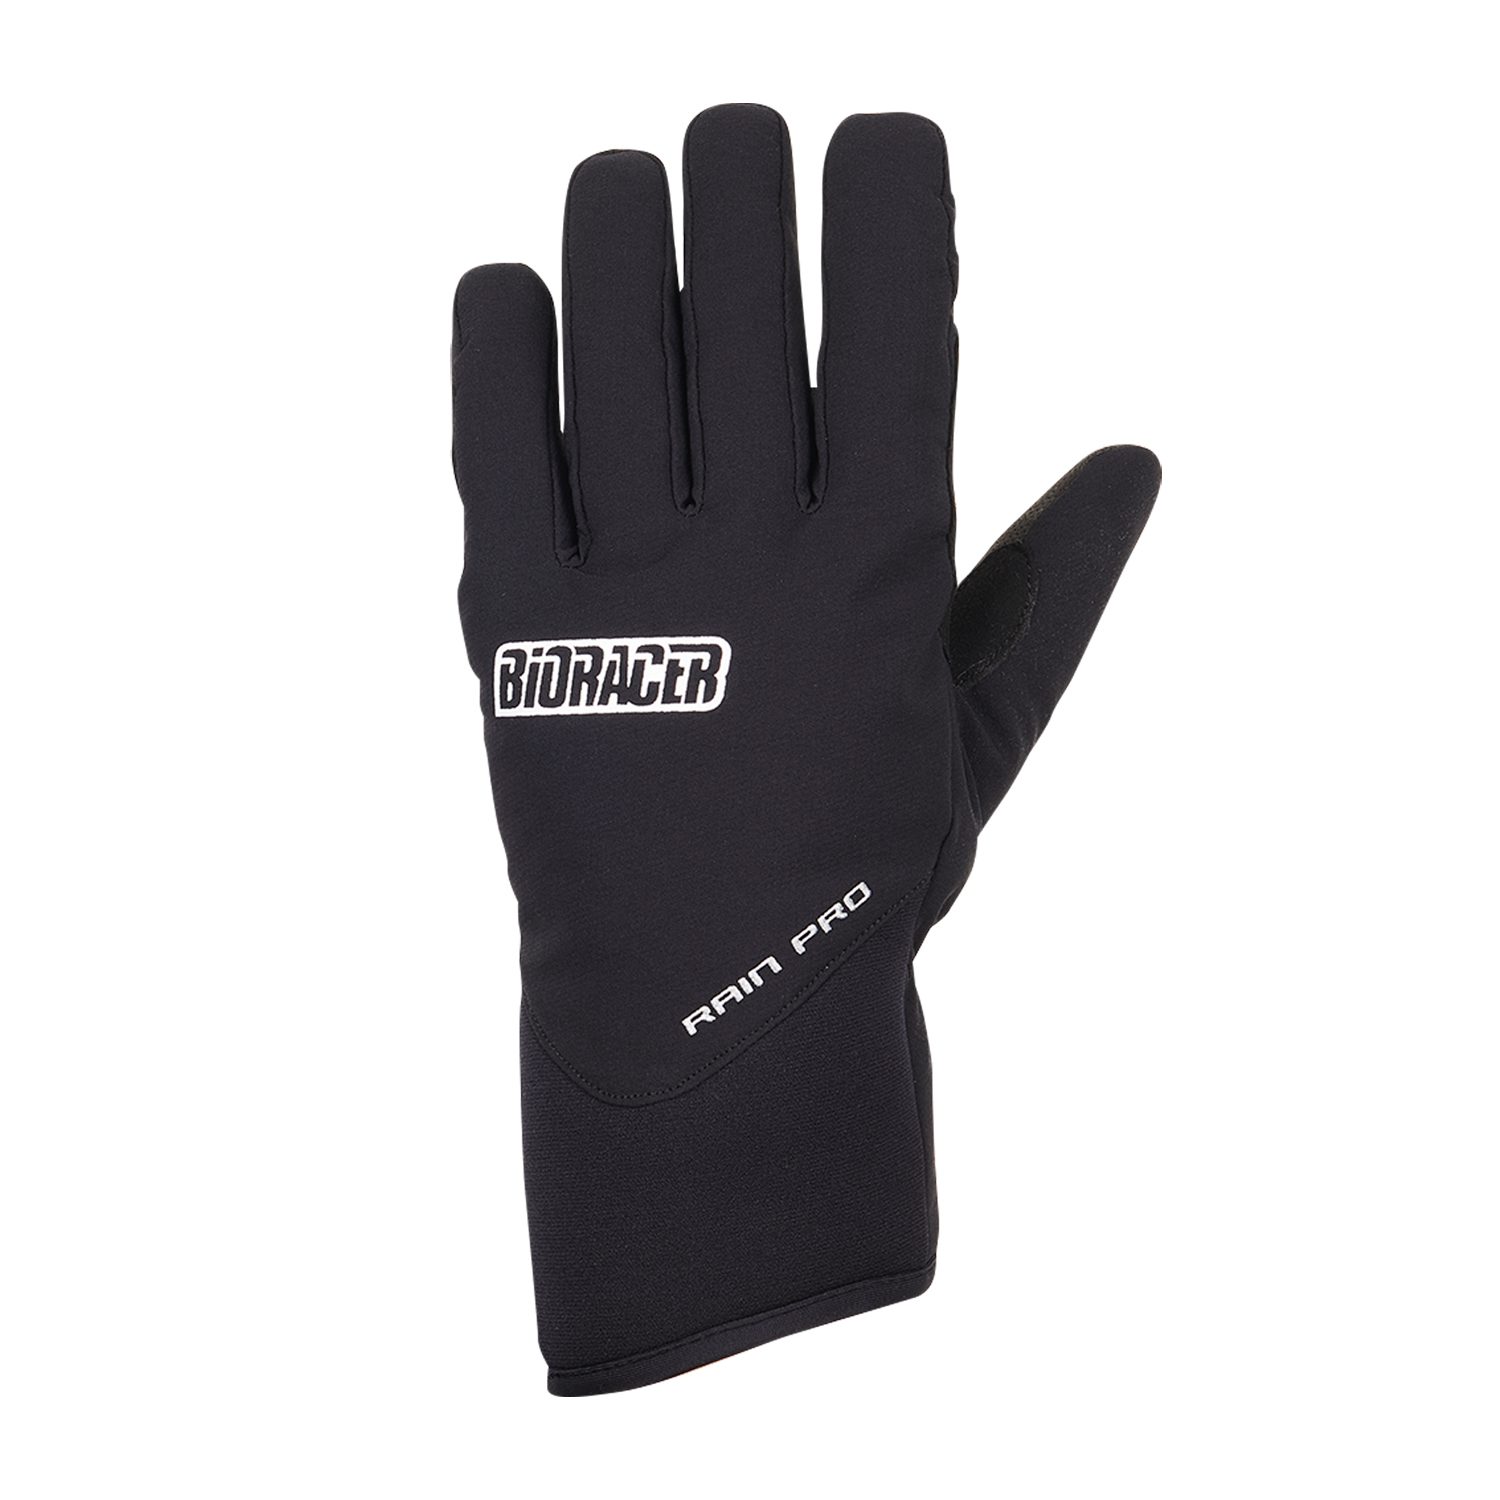 Rain Pro Gloves